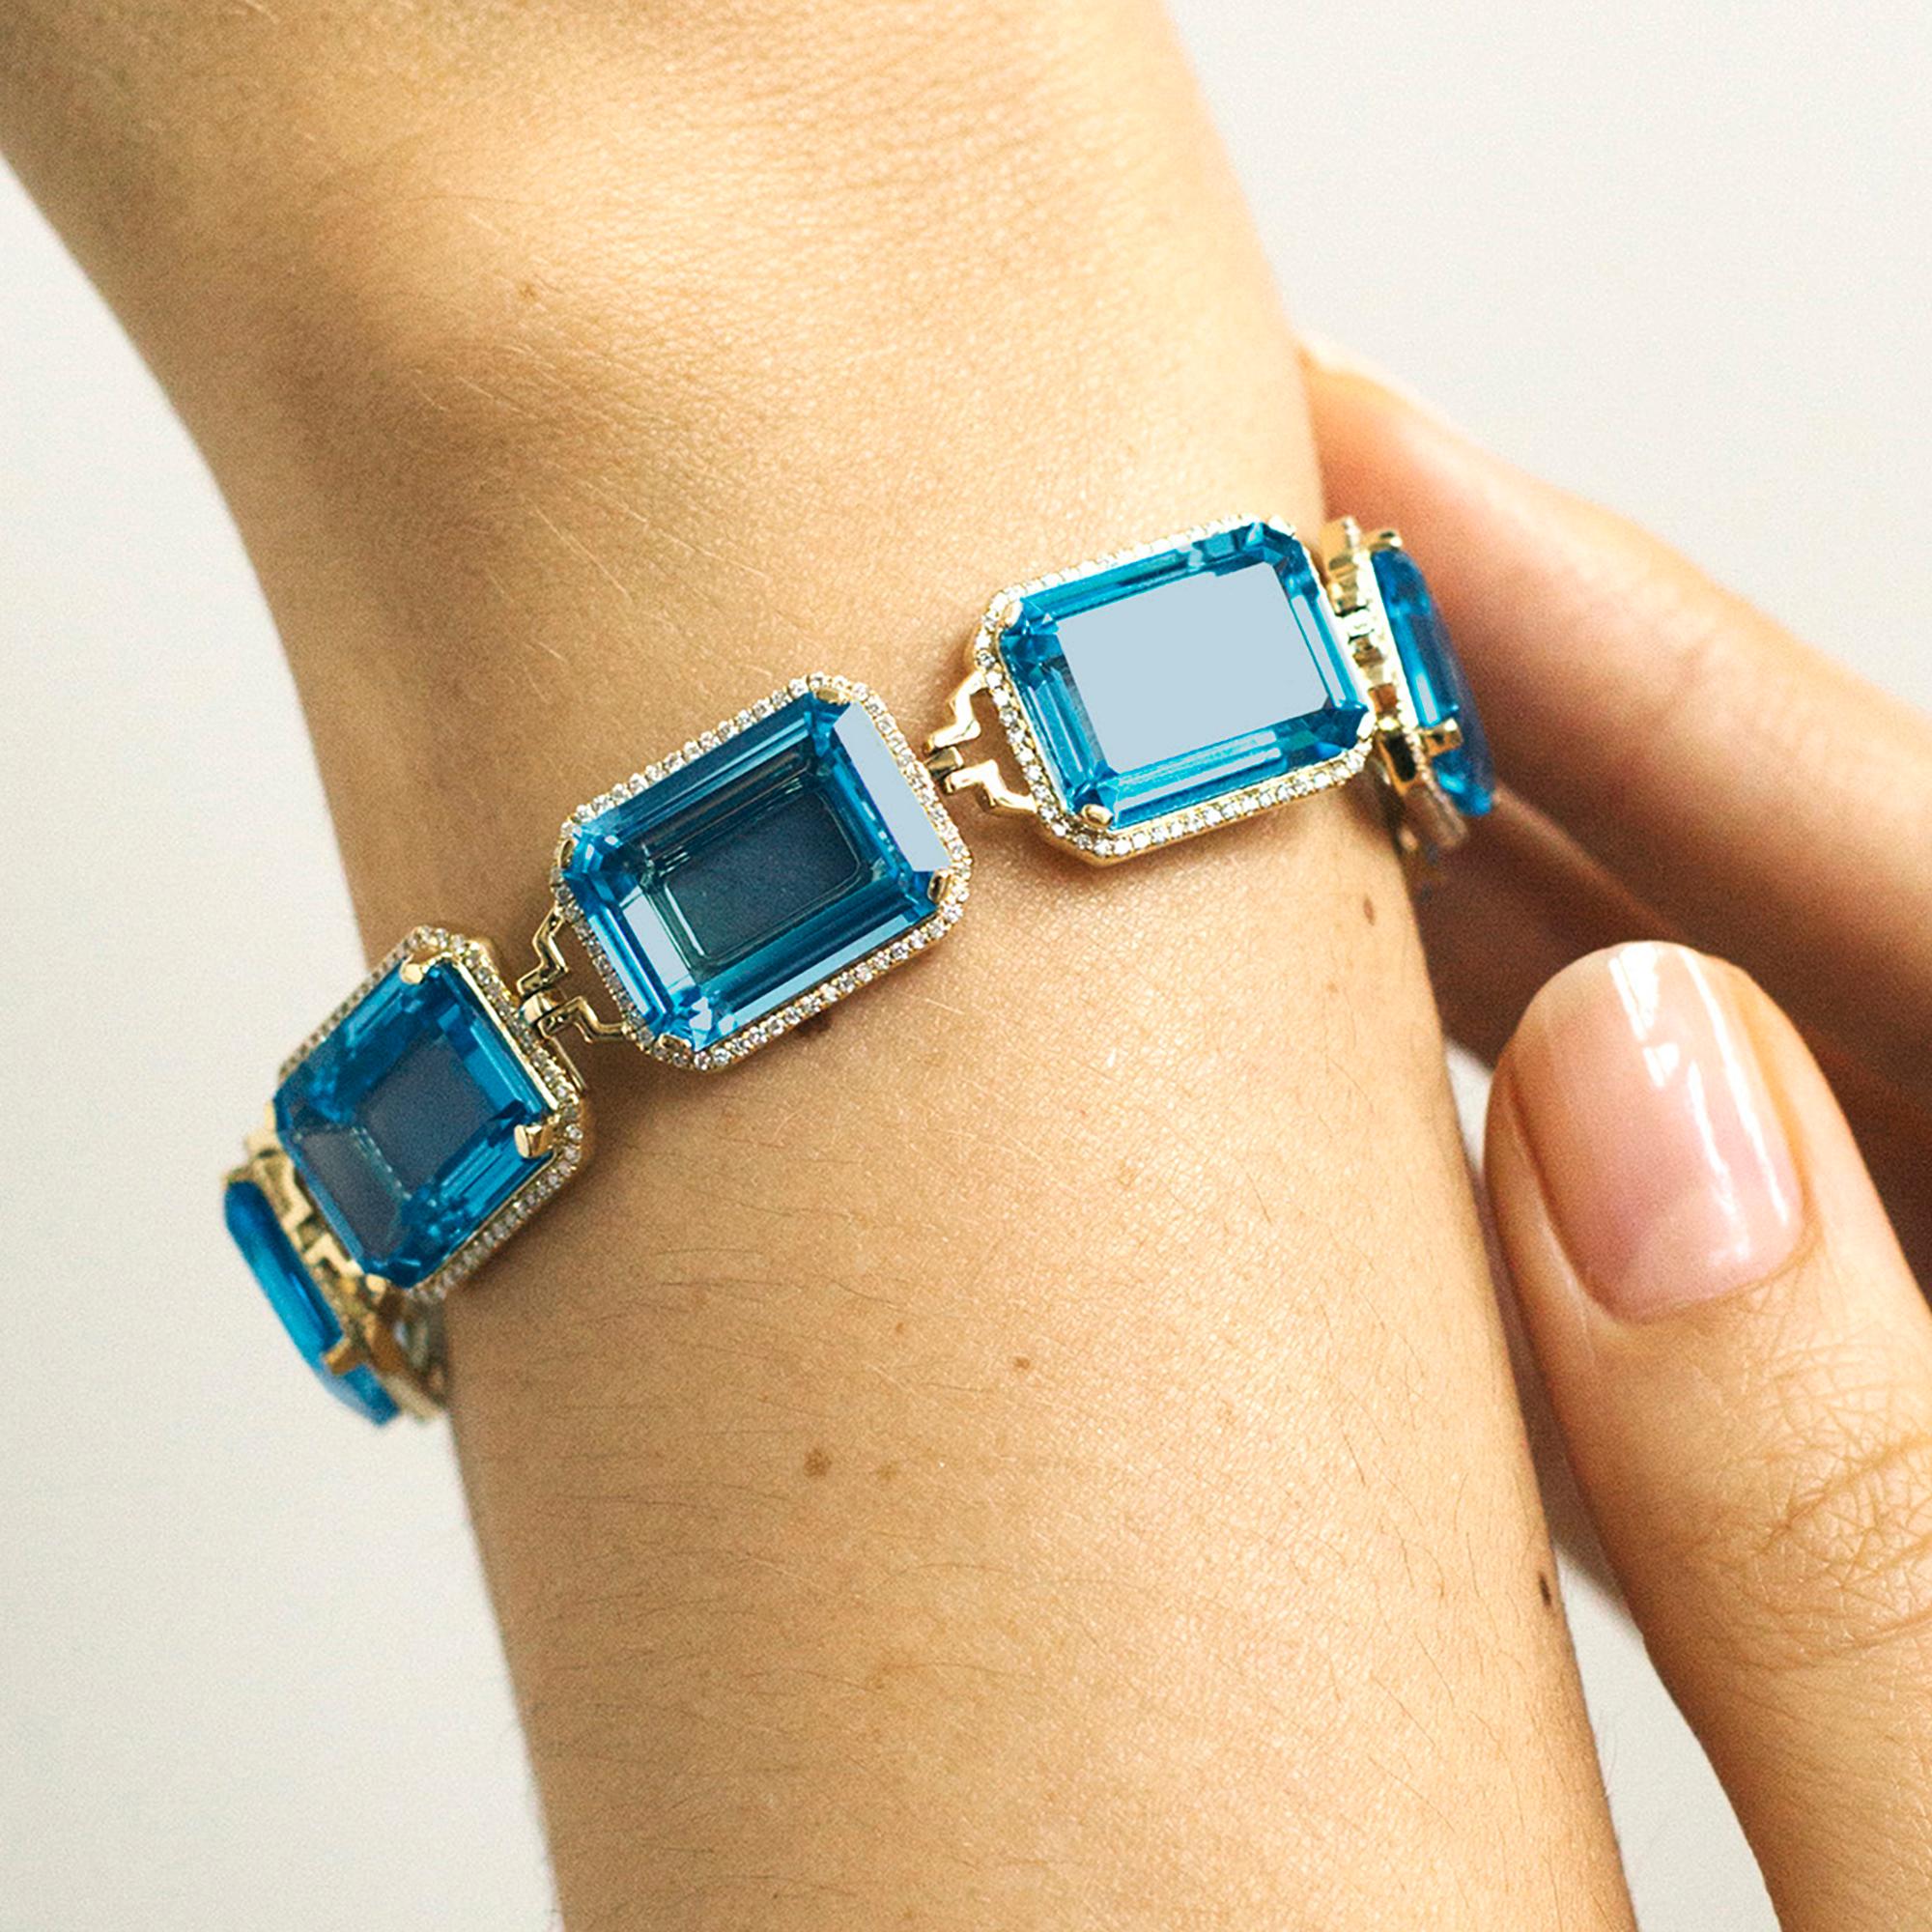 Das London Blue Topaz Emerald Cut Armband aus der 'Gossip' Collection'S strahlt Eleganz und Raffinesse aus. Er ist aus 18-karätigem Gelbgold gefertigt und verfügt über faszinierende London Blue Topaz-Edelsteine im Smaragdschliff, die einen tiefen,